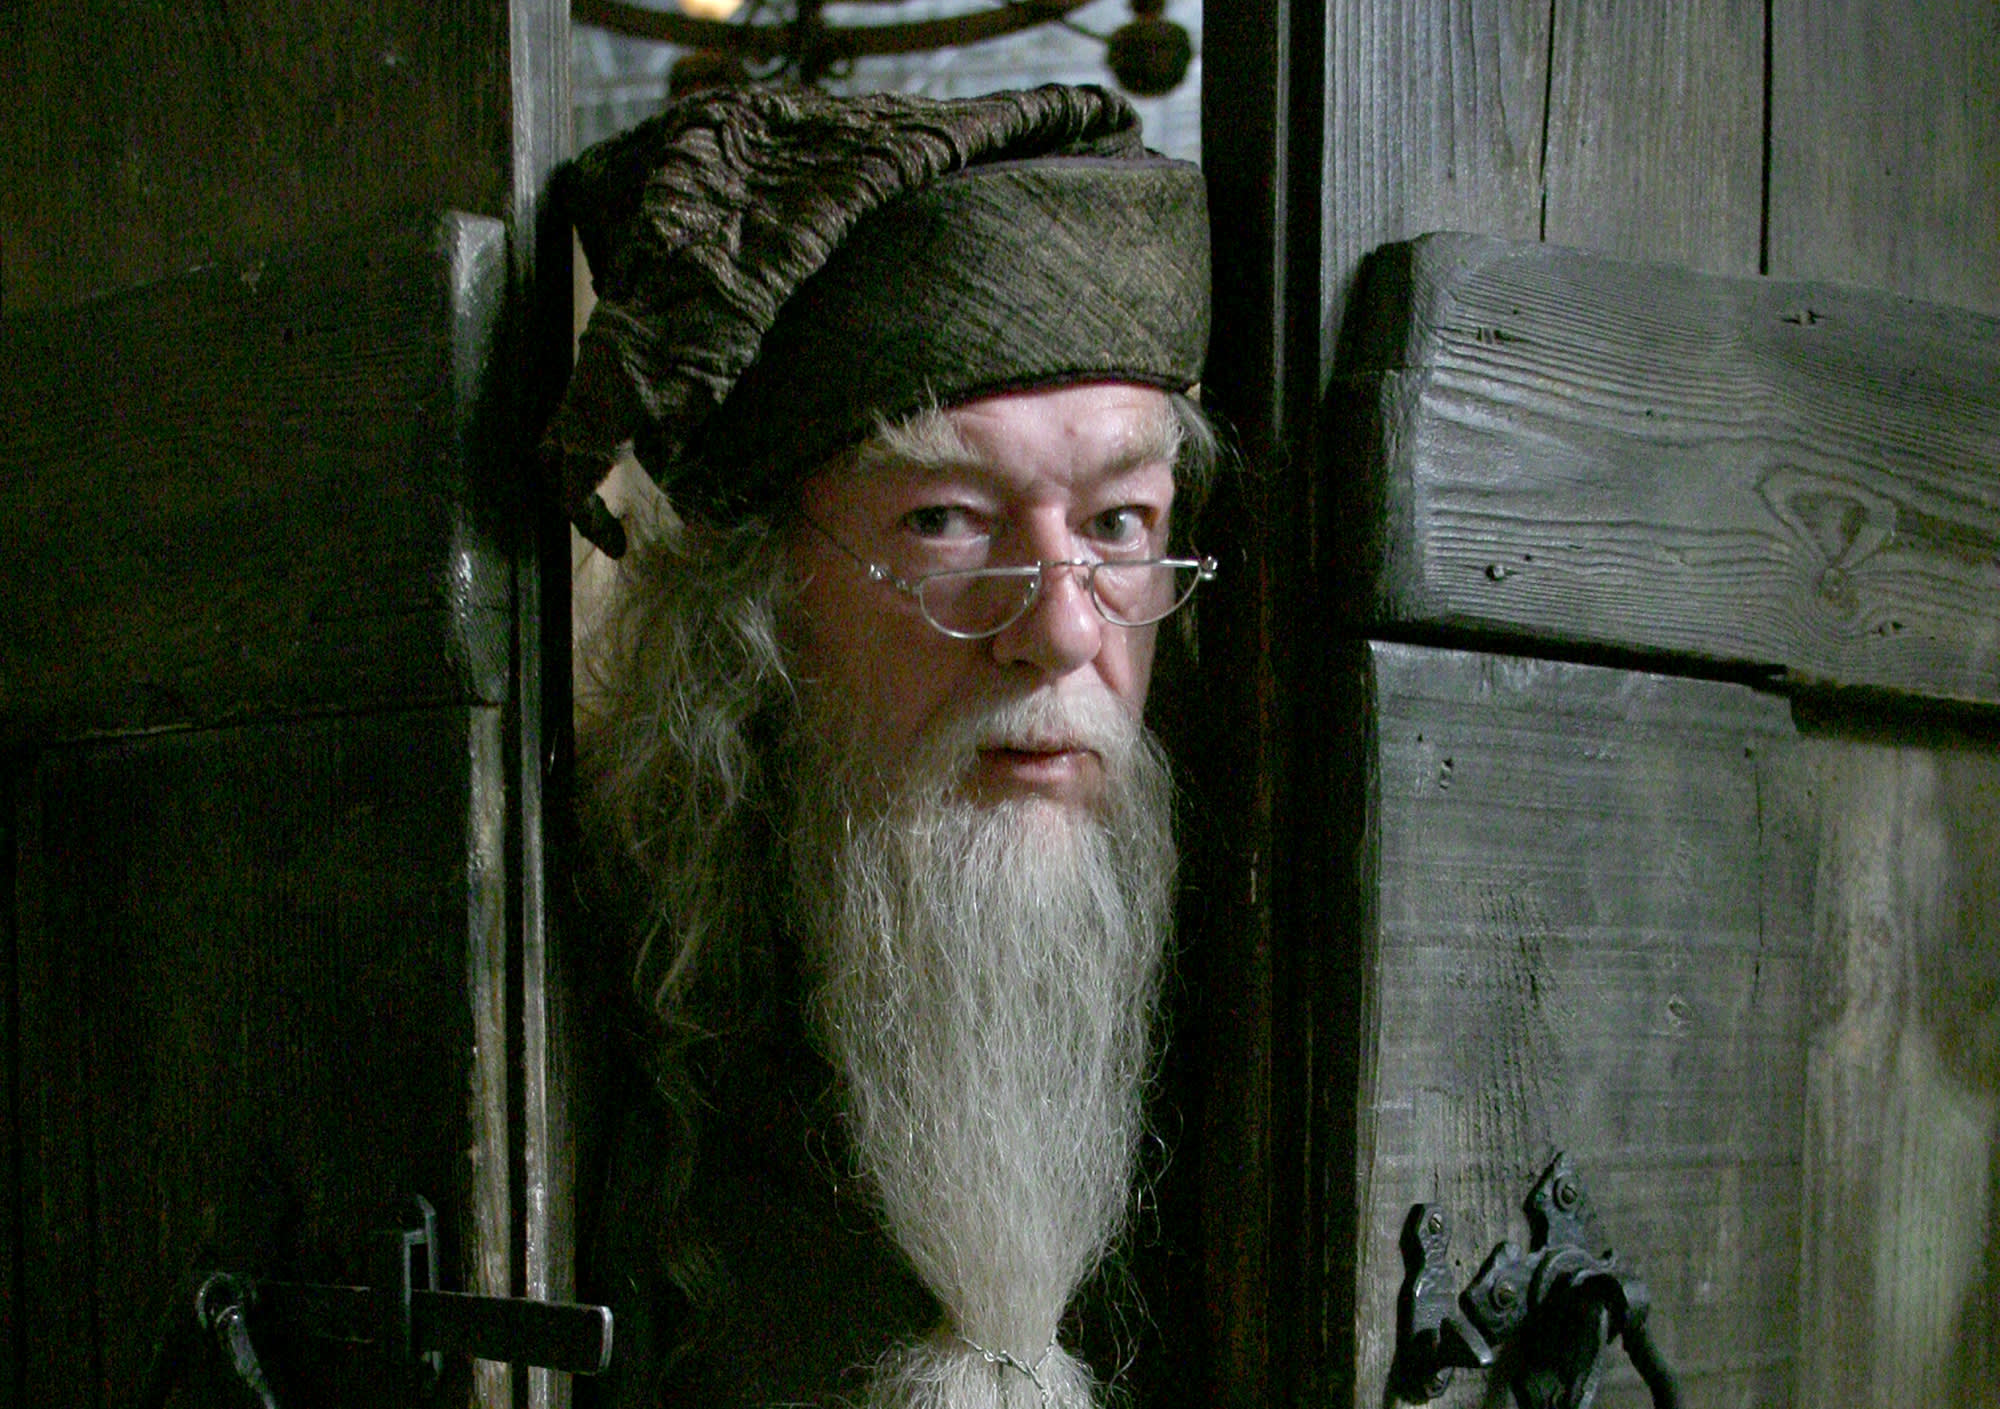 Albus Dumbledore is poking his head through the gap between a set of wooden doors.